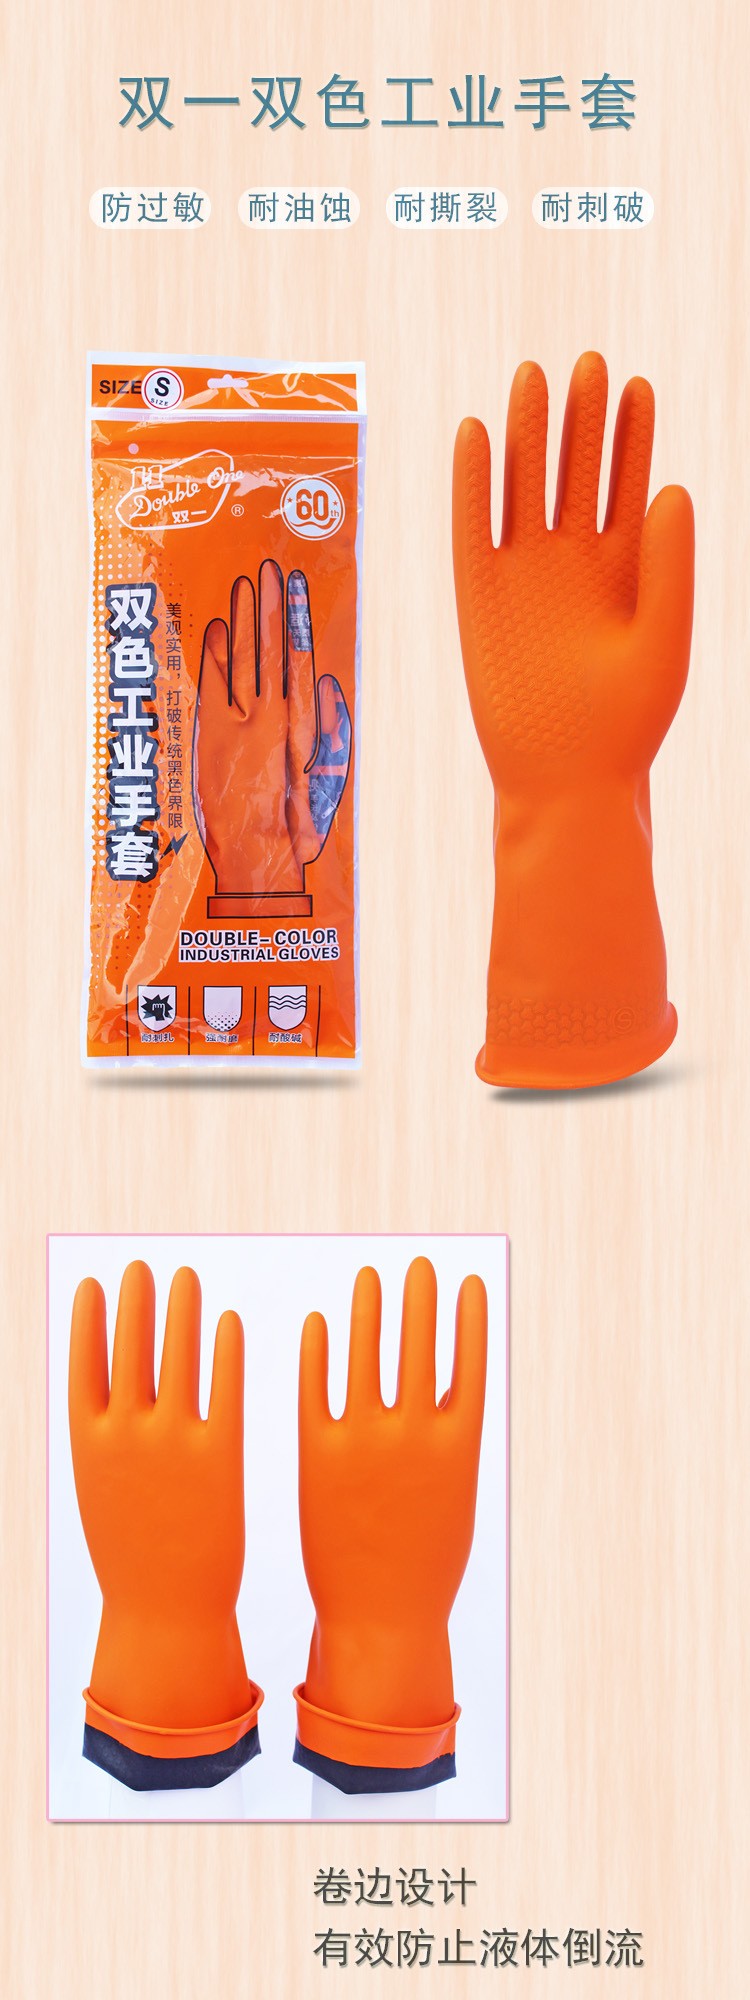 广州双一双色加厚工业乳胶手套耐酸碱手套橘色图片1